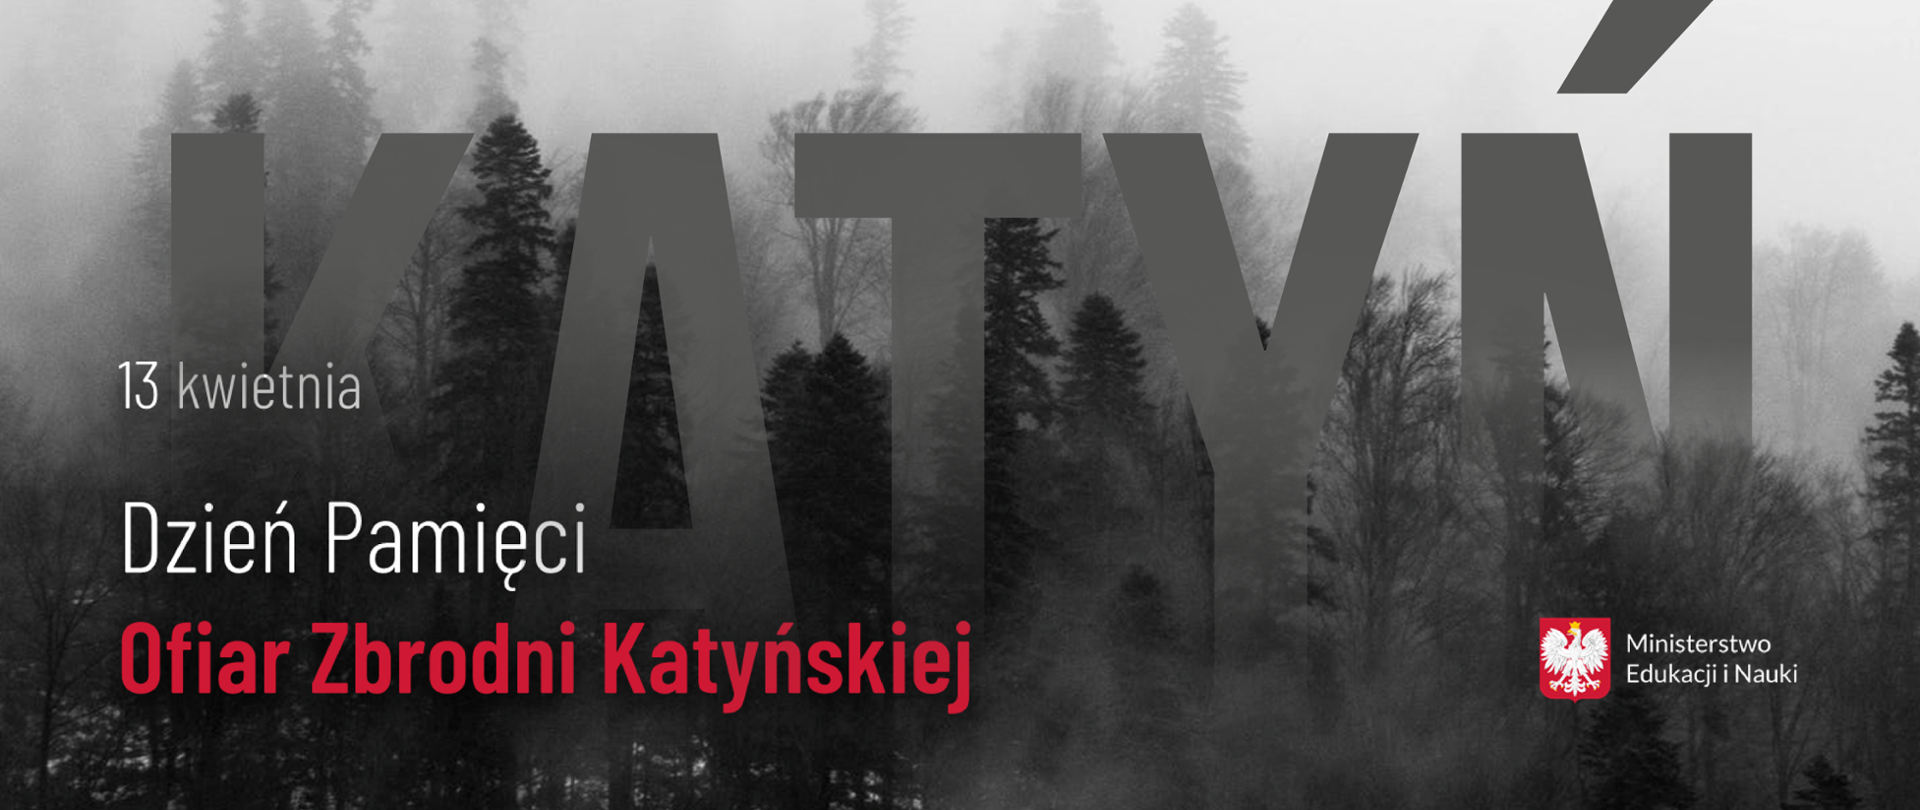 Grafika z mrocznym lasem, dużym napisem "KATYŃ" oraz tekstem: "13 kwietnia – Dzień Pamięci Ofiar Zbrodni Katyńskiej"